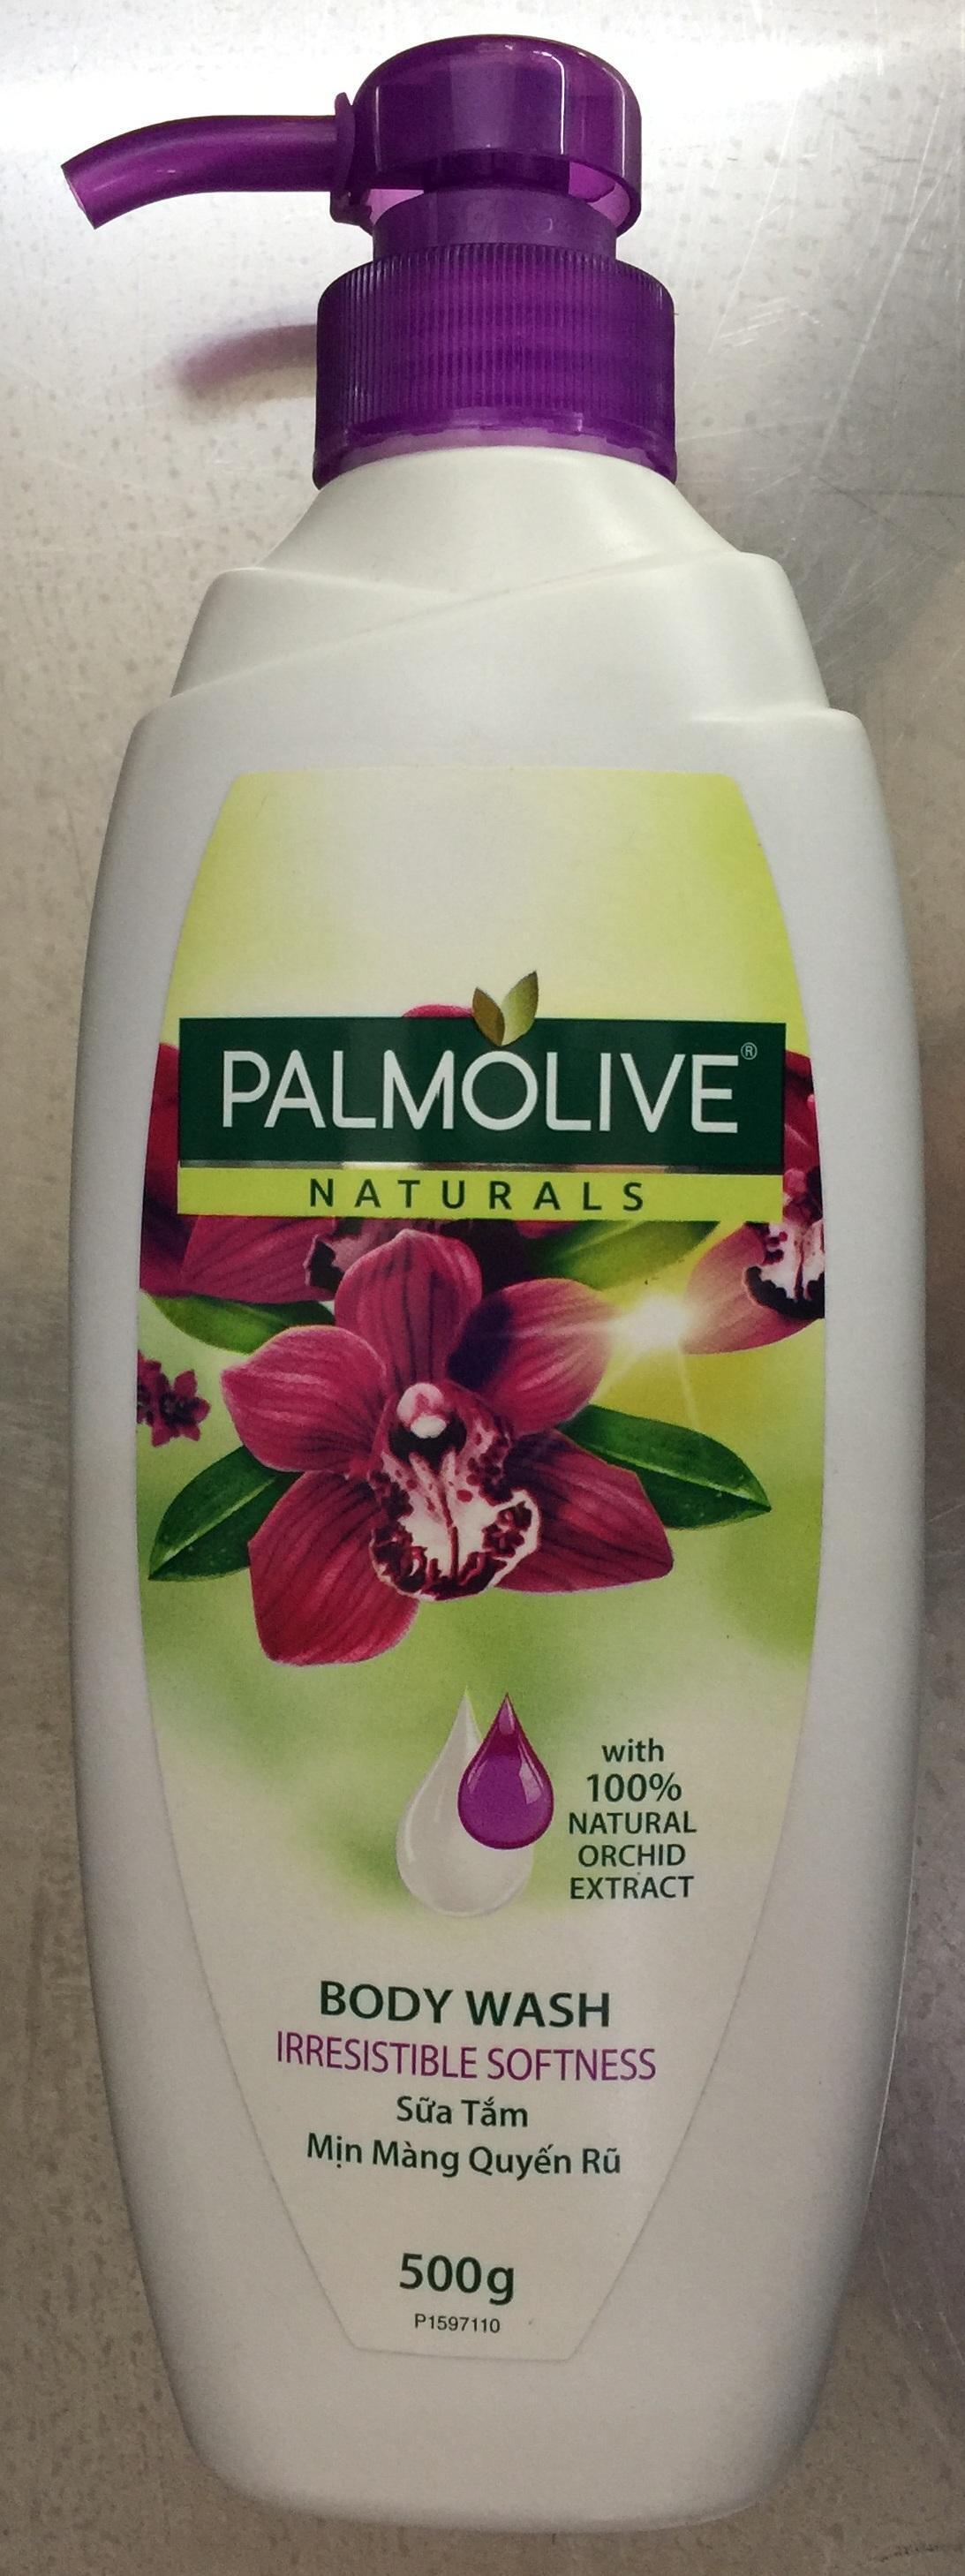 Sữa tắm Palmolive mịn màng quyến rũ 100% chiết xuất từ phong lan 500g